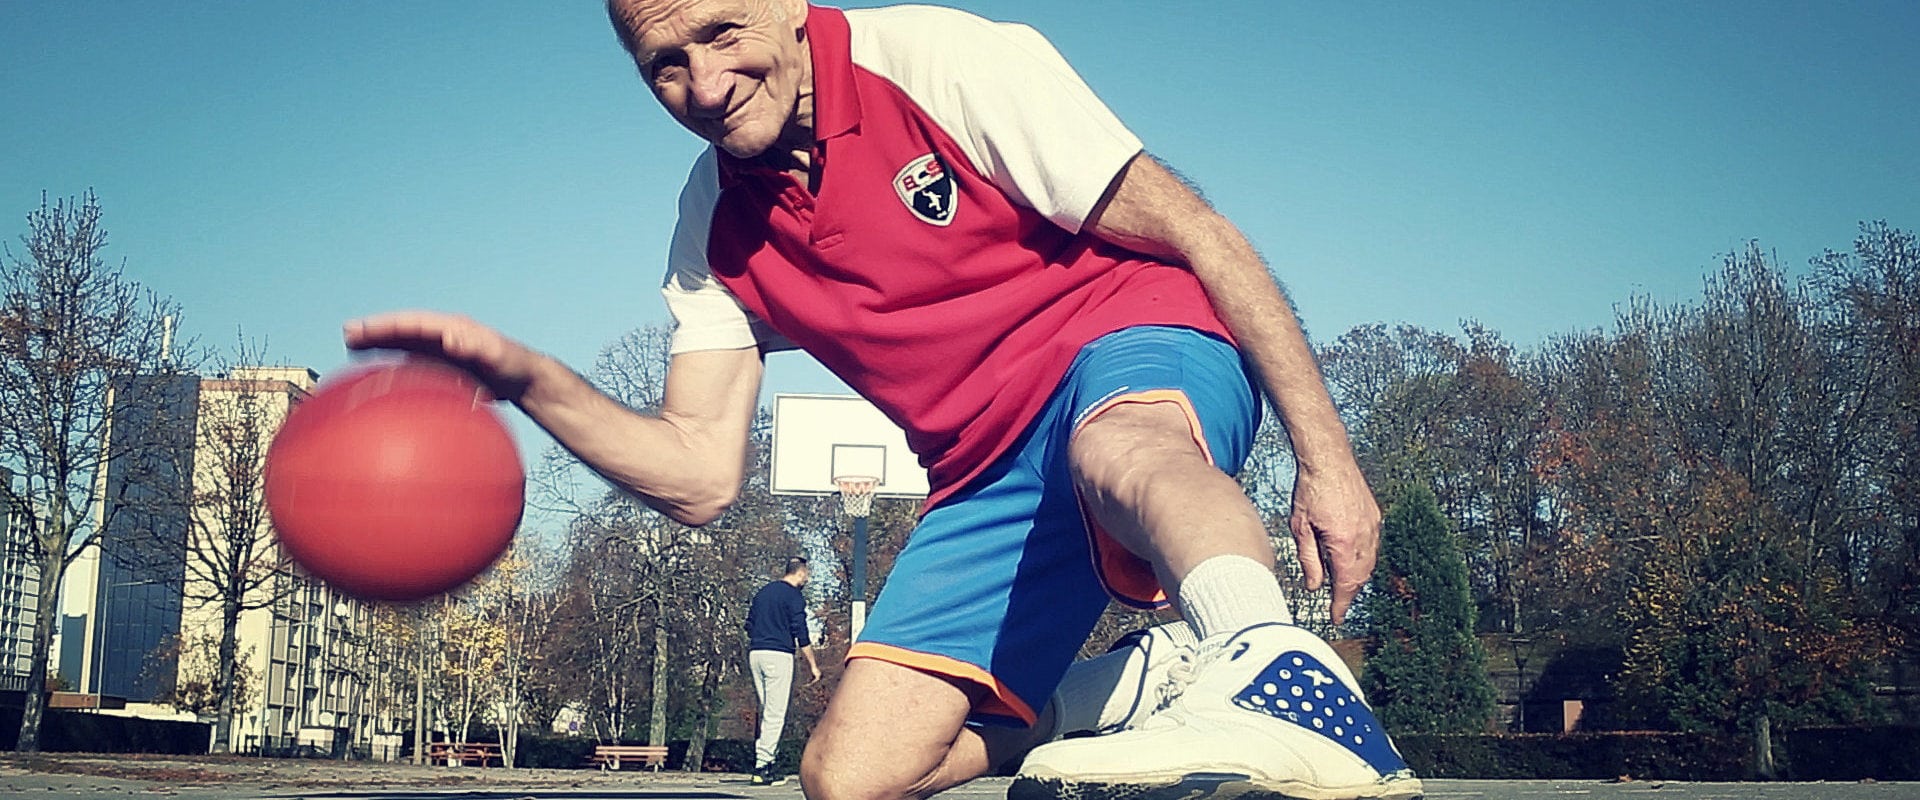 Félix Mazza, 73 ans : basketteur, clubbeur, champion de marche…